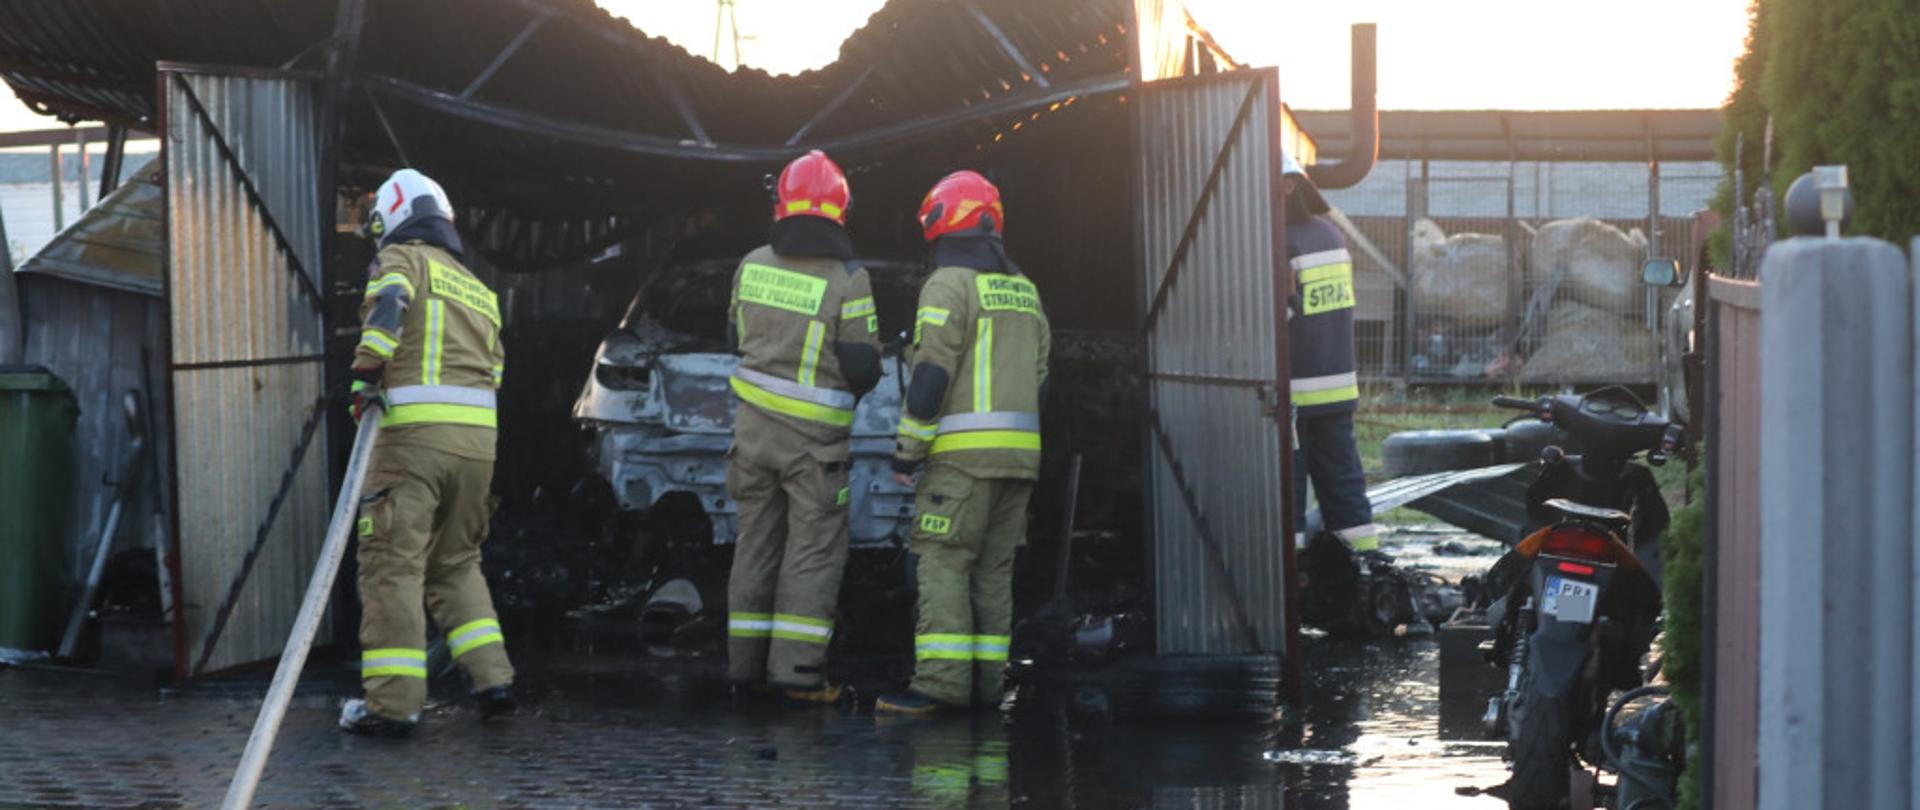 Zdjęcie przedstawia strażaków OSP oraz druhów którzy dogaszając wnętrze garażu w którym doszło do pożaru. Jest to garaż blaszany. W garaży znajduje się spalony samochód osobowy. Z prawej strony przed garażem stoi skuter. 